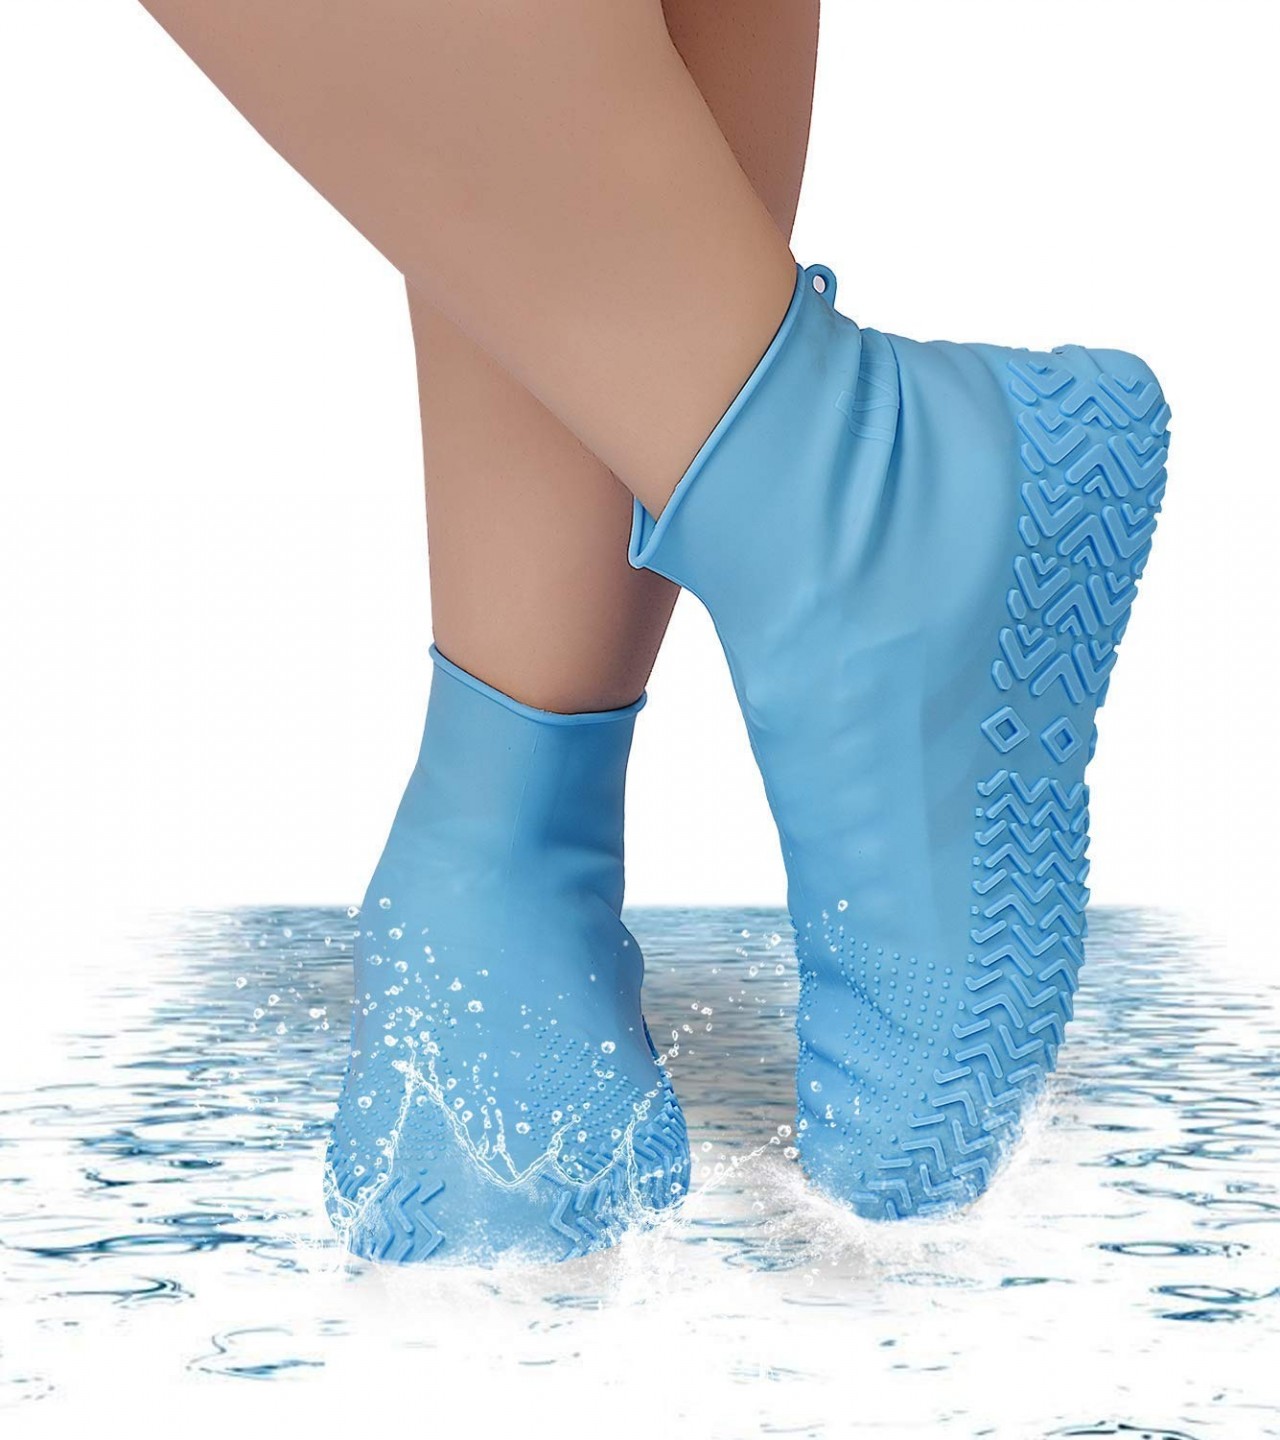 Non-Slip Silicone Rain Boot Shoe Cover